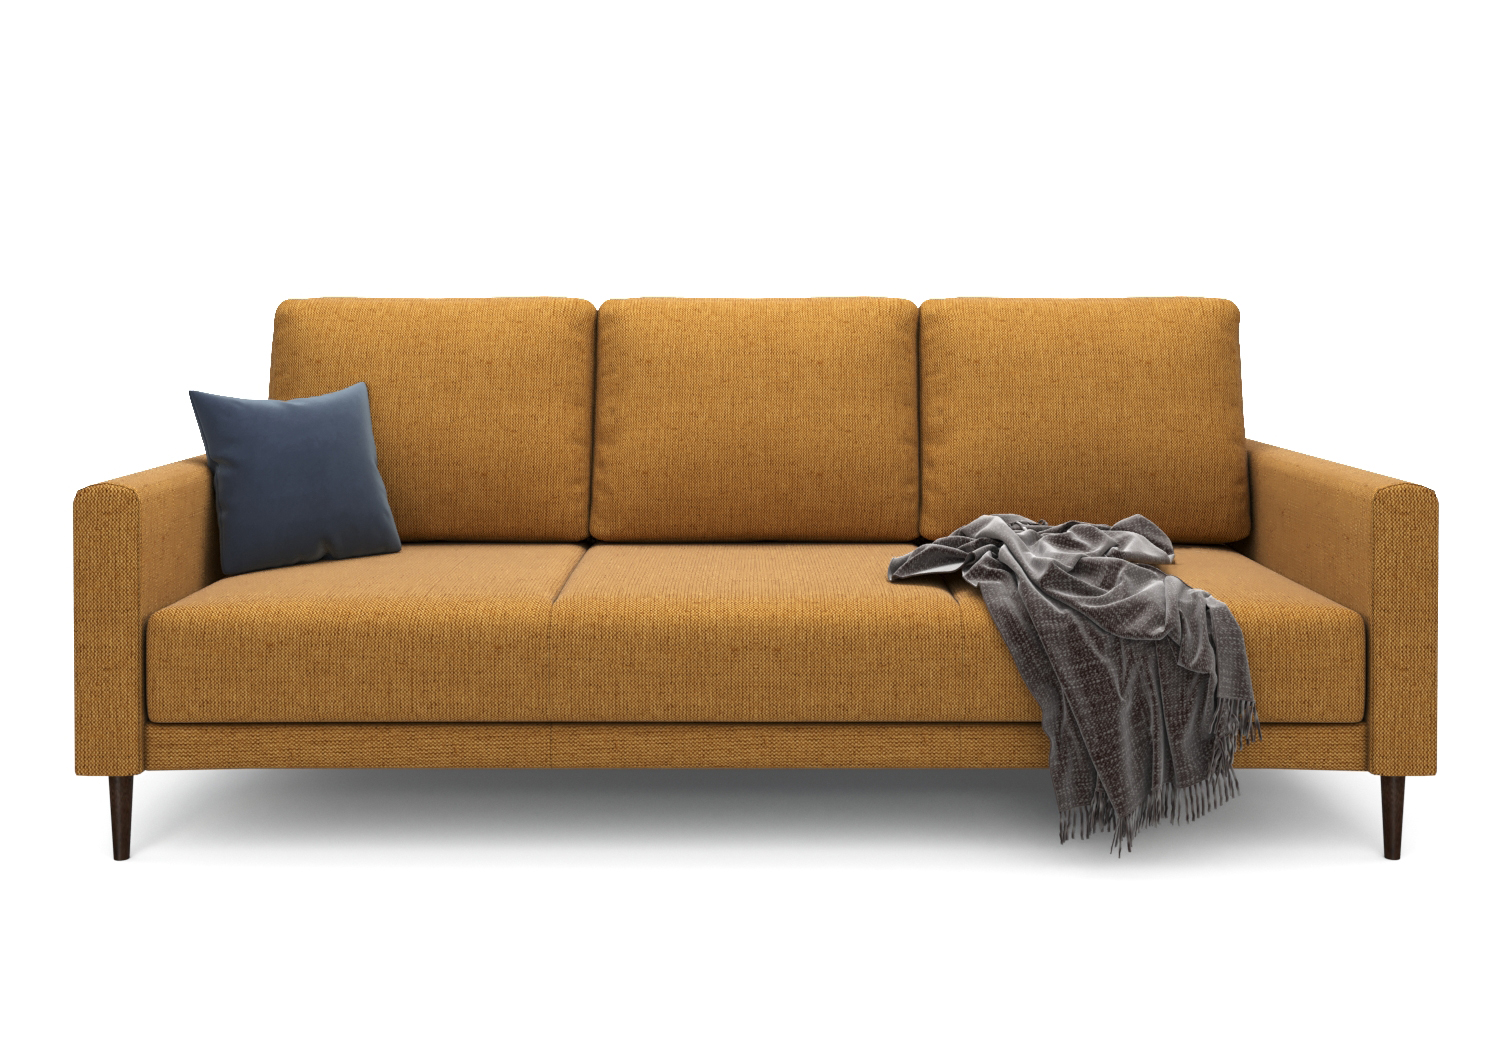 Ричи, прямой диван, Mys 560 ткань Рогожка цвет Желтый механизм трансформации Пантограф